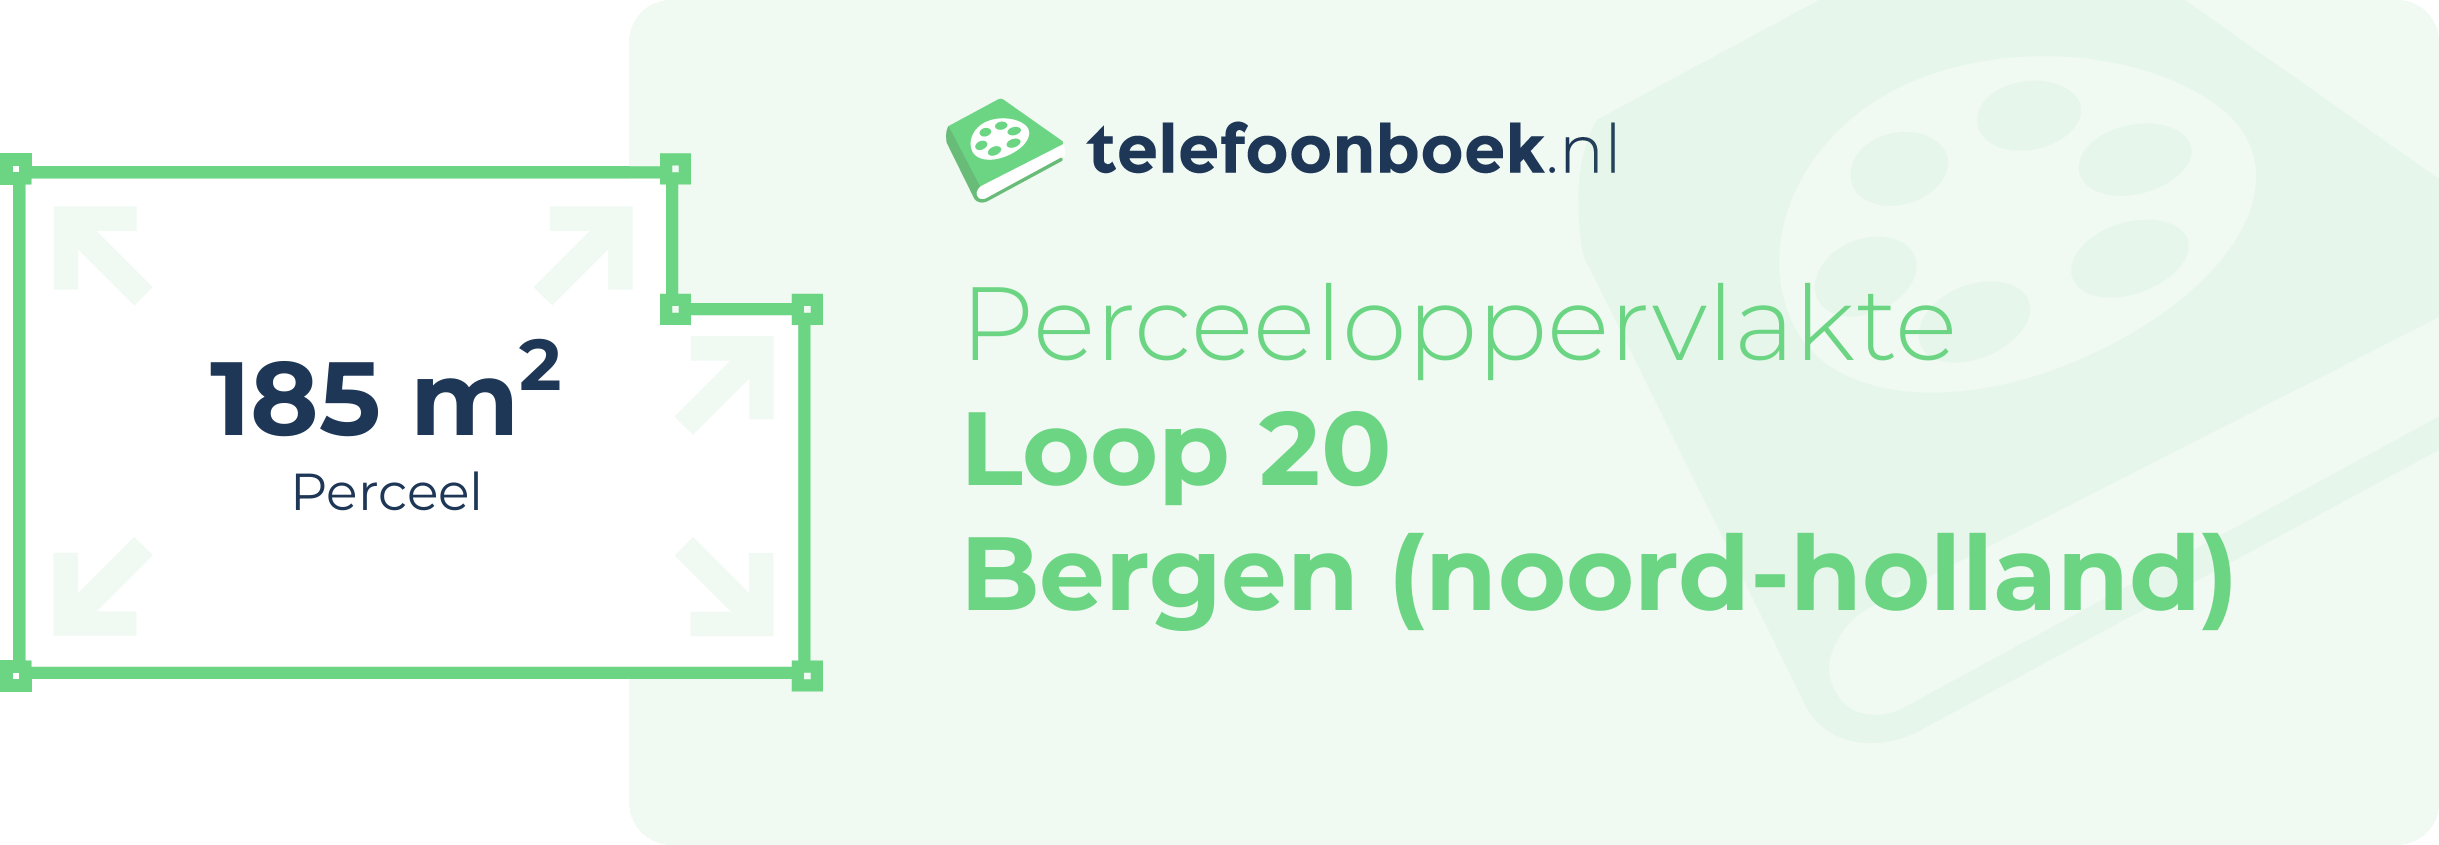 Perceeloppervlakte Loop 20 Bergen (Noord-Holland)